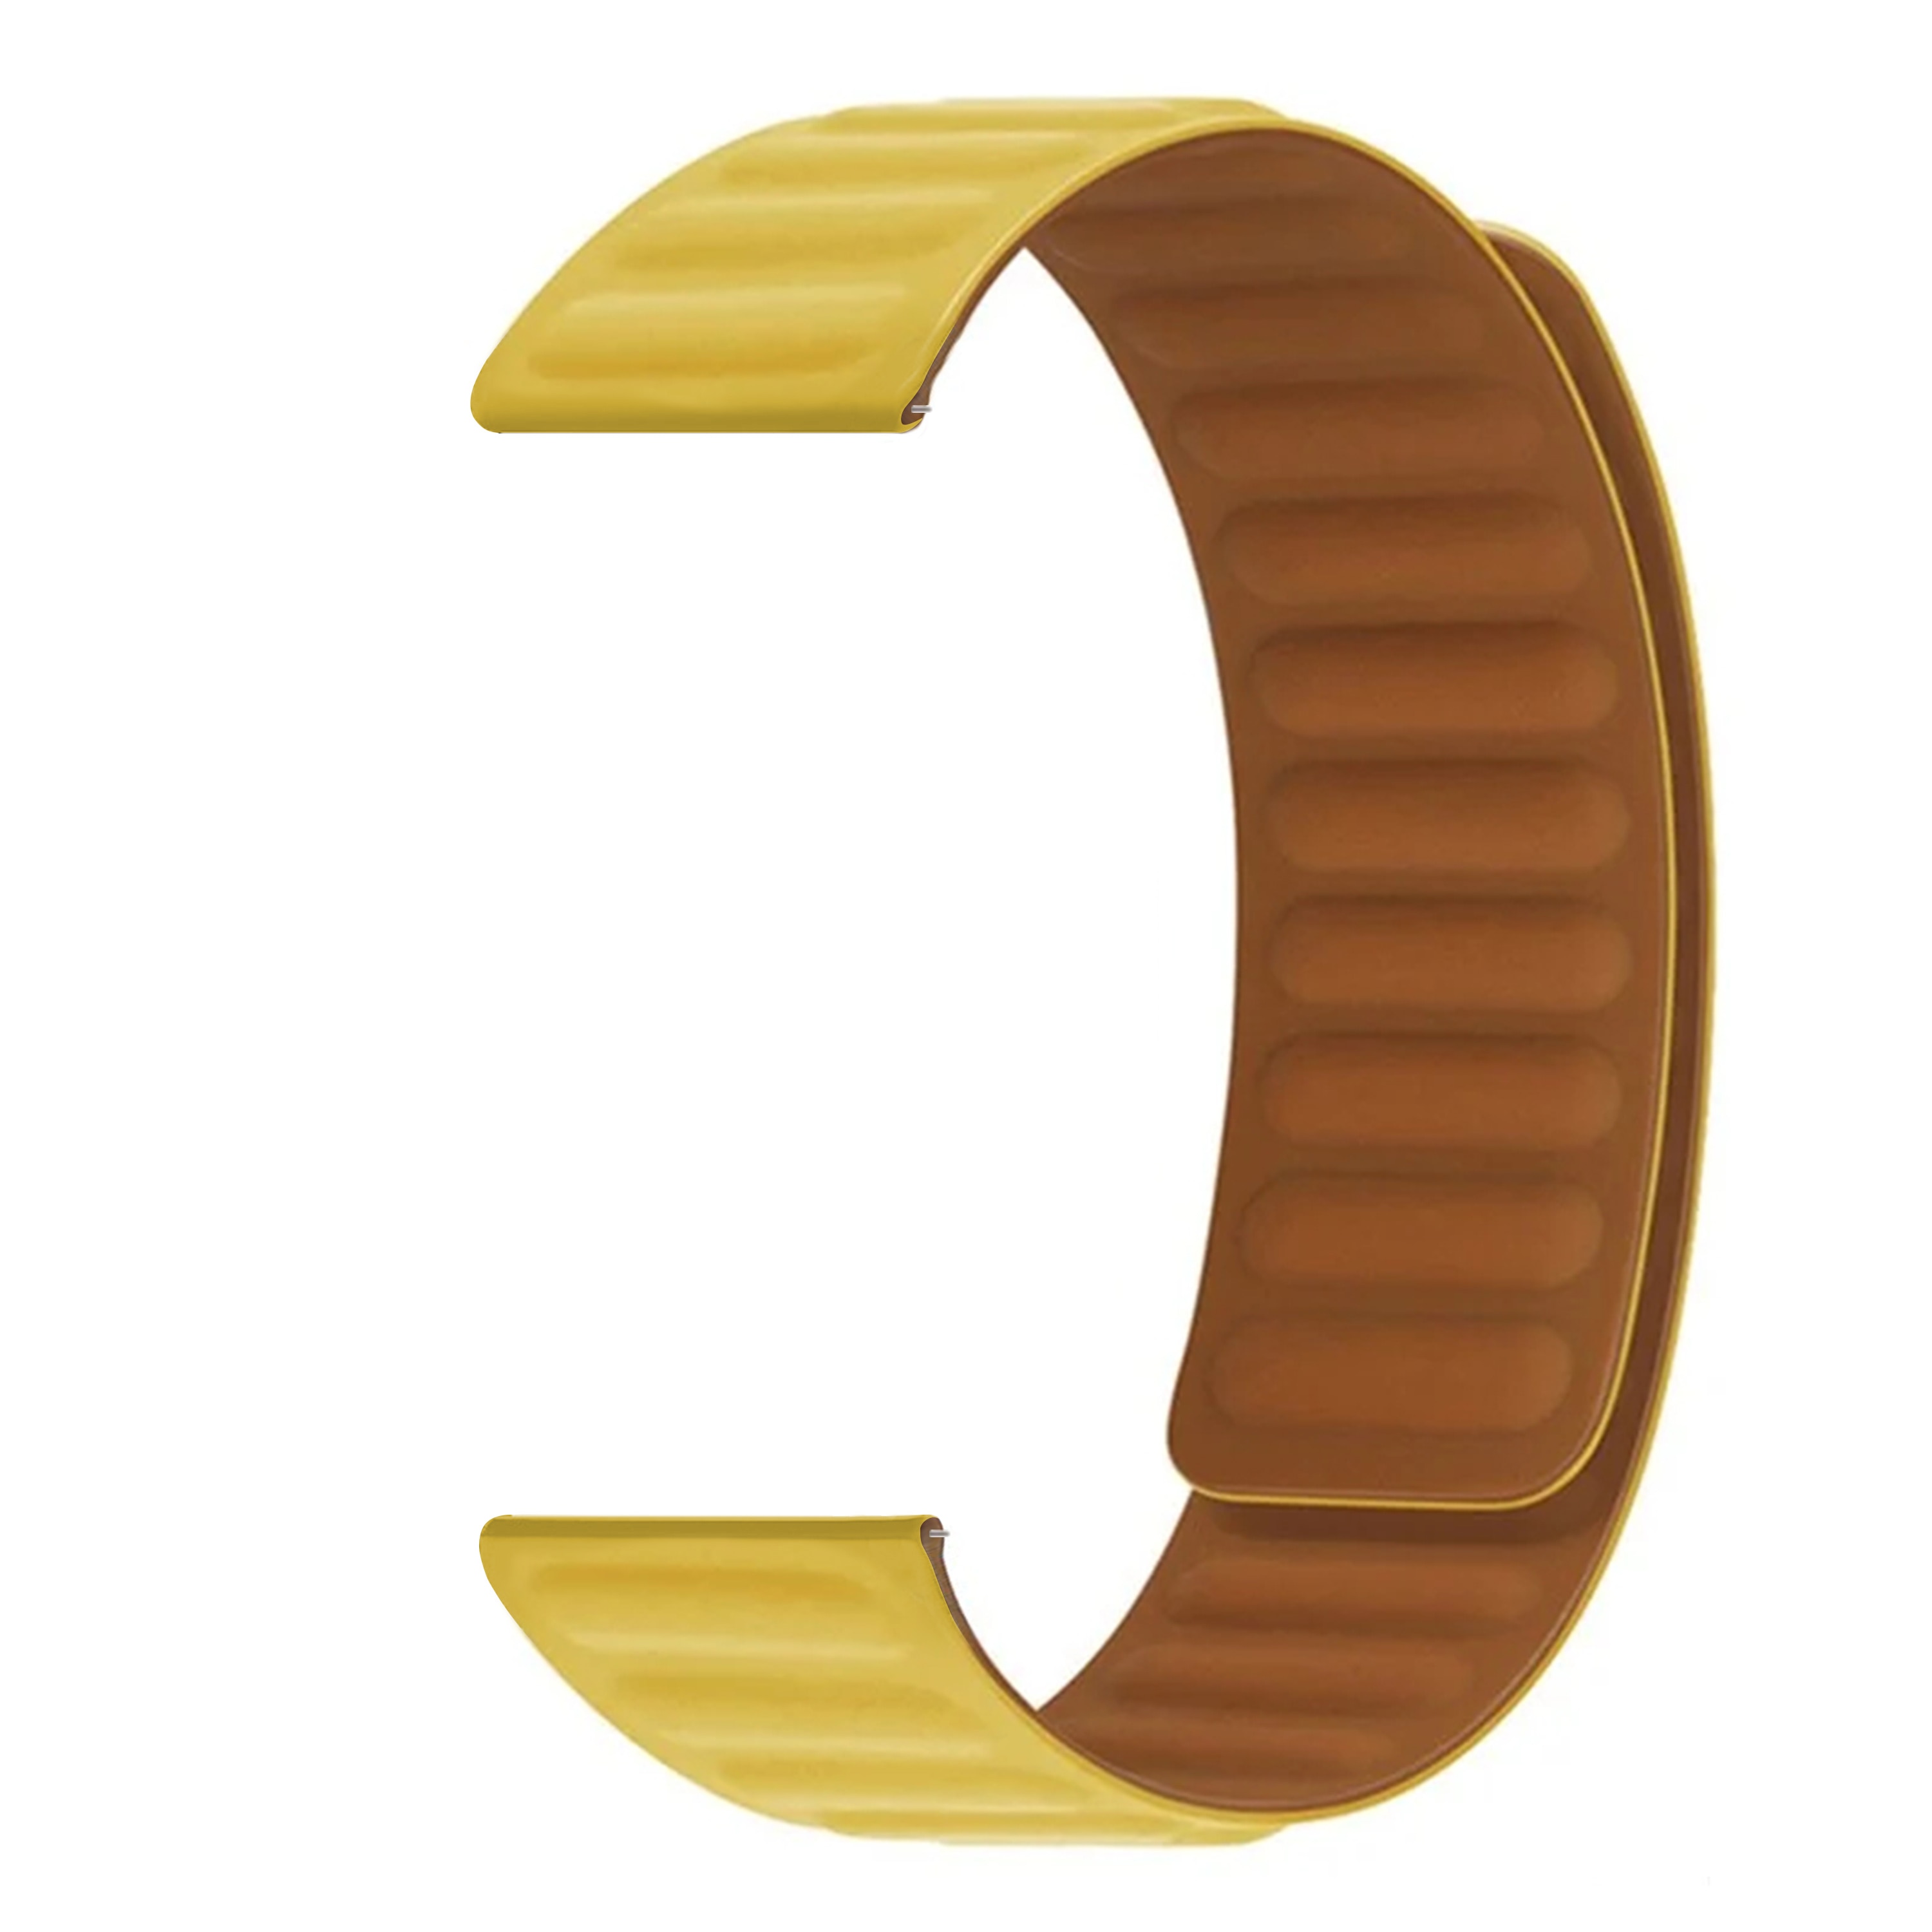 Bracelet magnétique en silicone Coros Apex 2 Pro, jaune